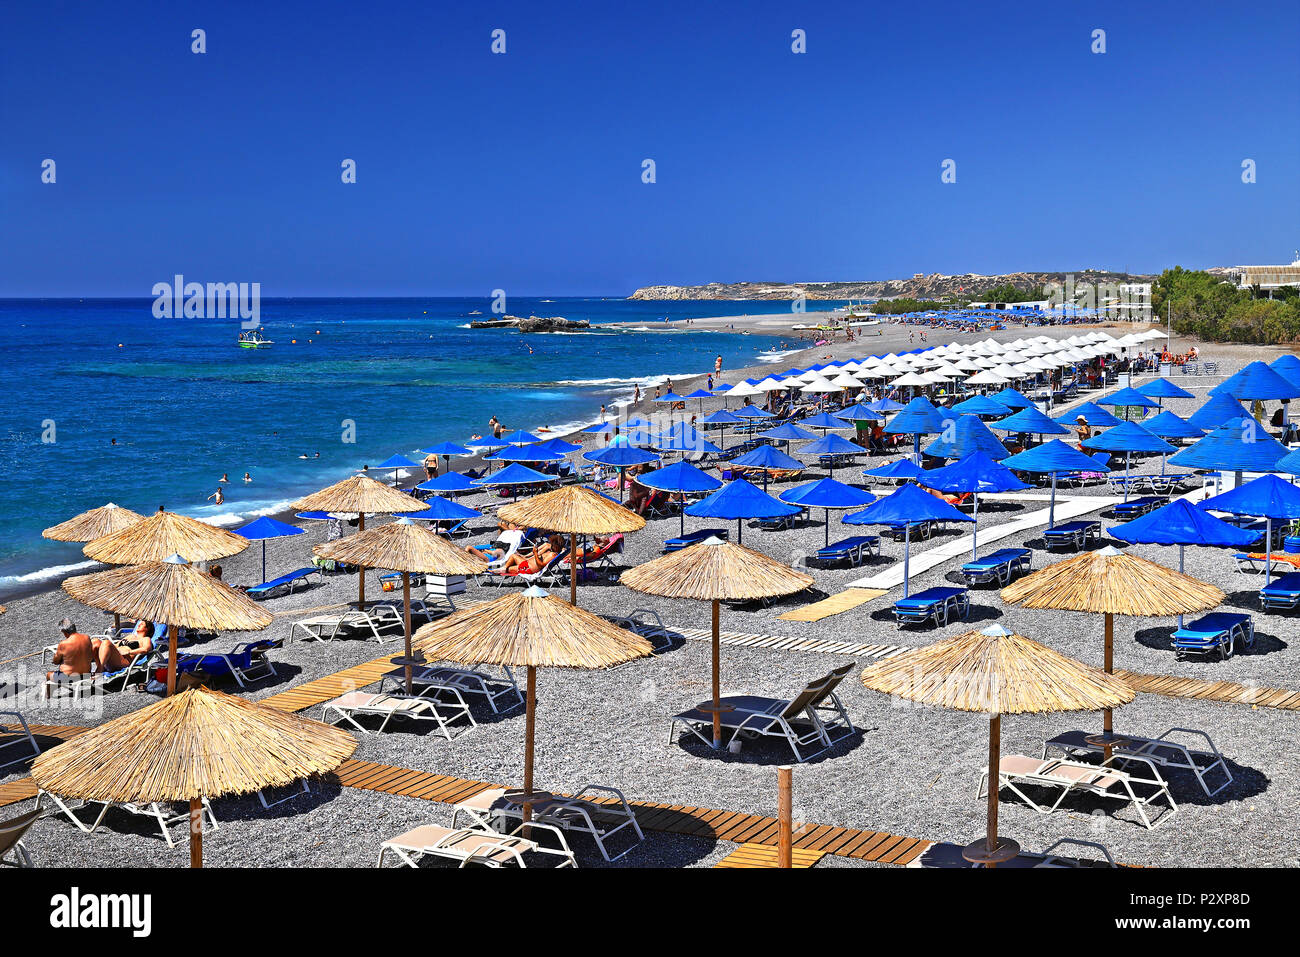 Psaropoula beach, Koutsounari village, Municipality of Ierapetra, Crete island, Greece. Stock Photo